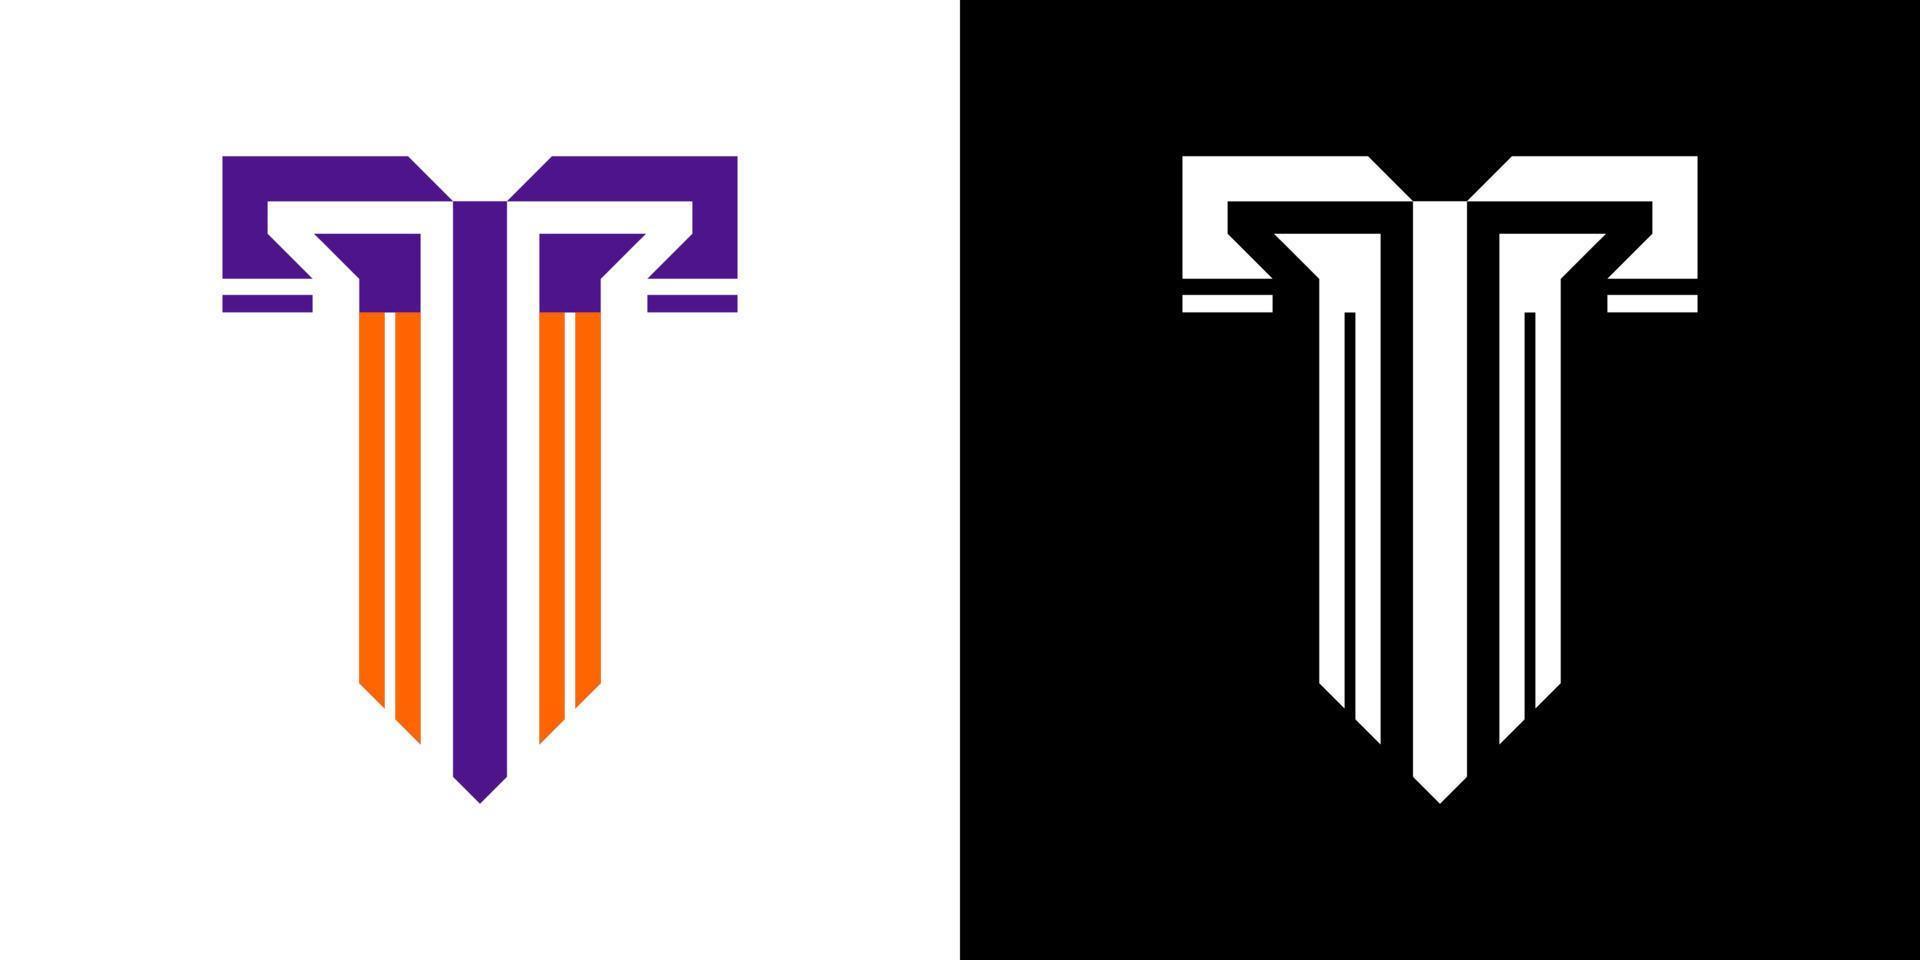 création de logo lettre t. identité de marque entreprise vecteur t icône et logo.